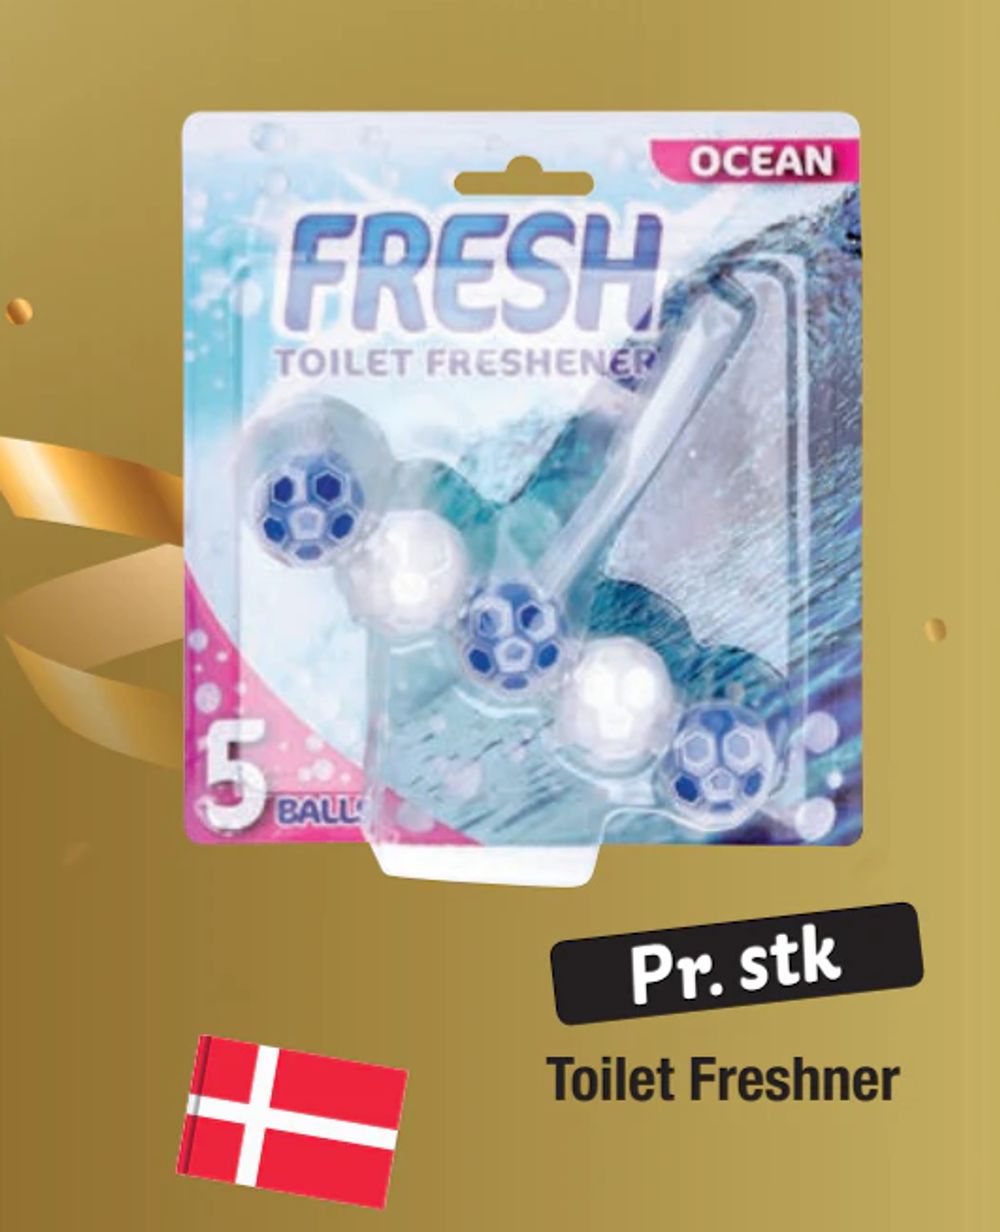 Tilbud på Toilet Freshner fra fakta Tyskland til 10 kr.